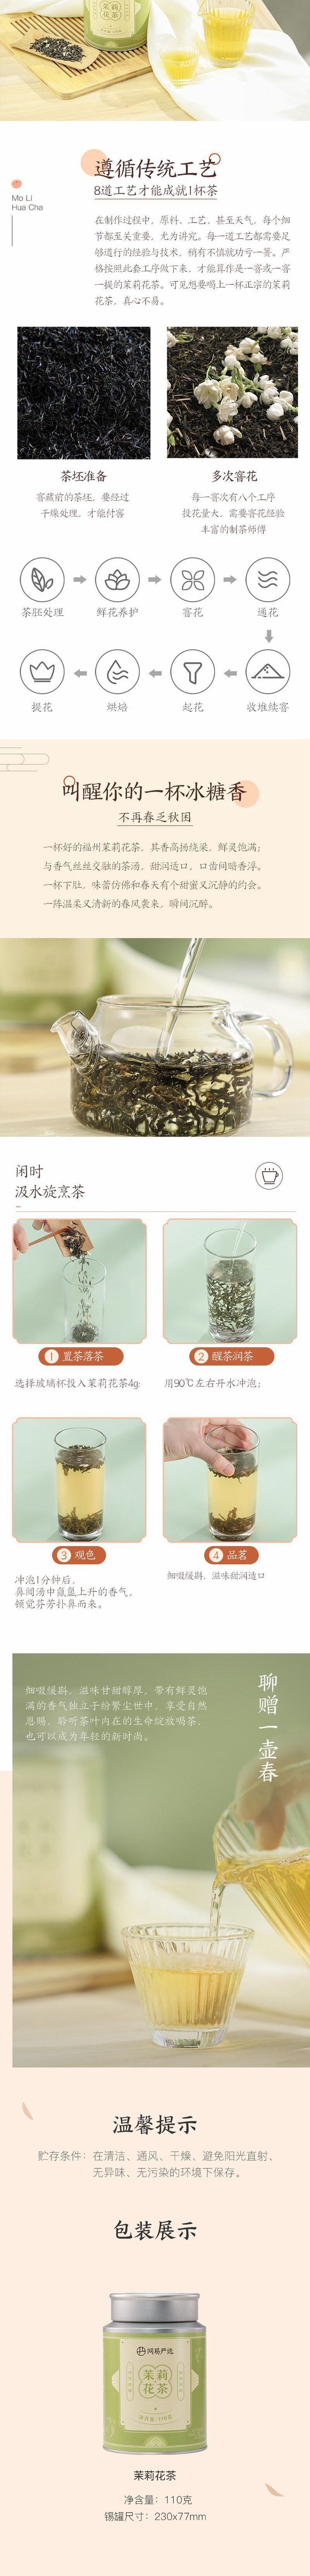 【中国直邮】网易严选 全新升级银罐 茉莉花茶 100克 罐装 浓香茉莉绿茶 送礼佳品